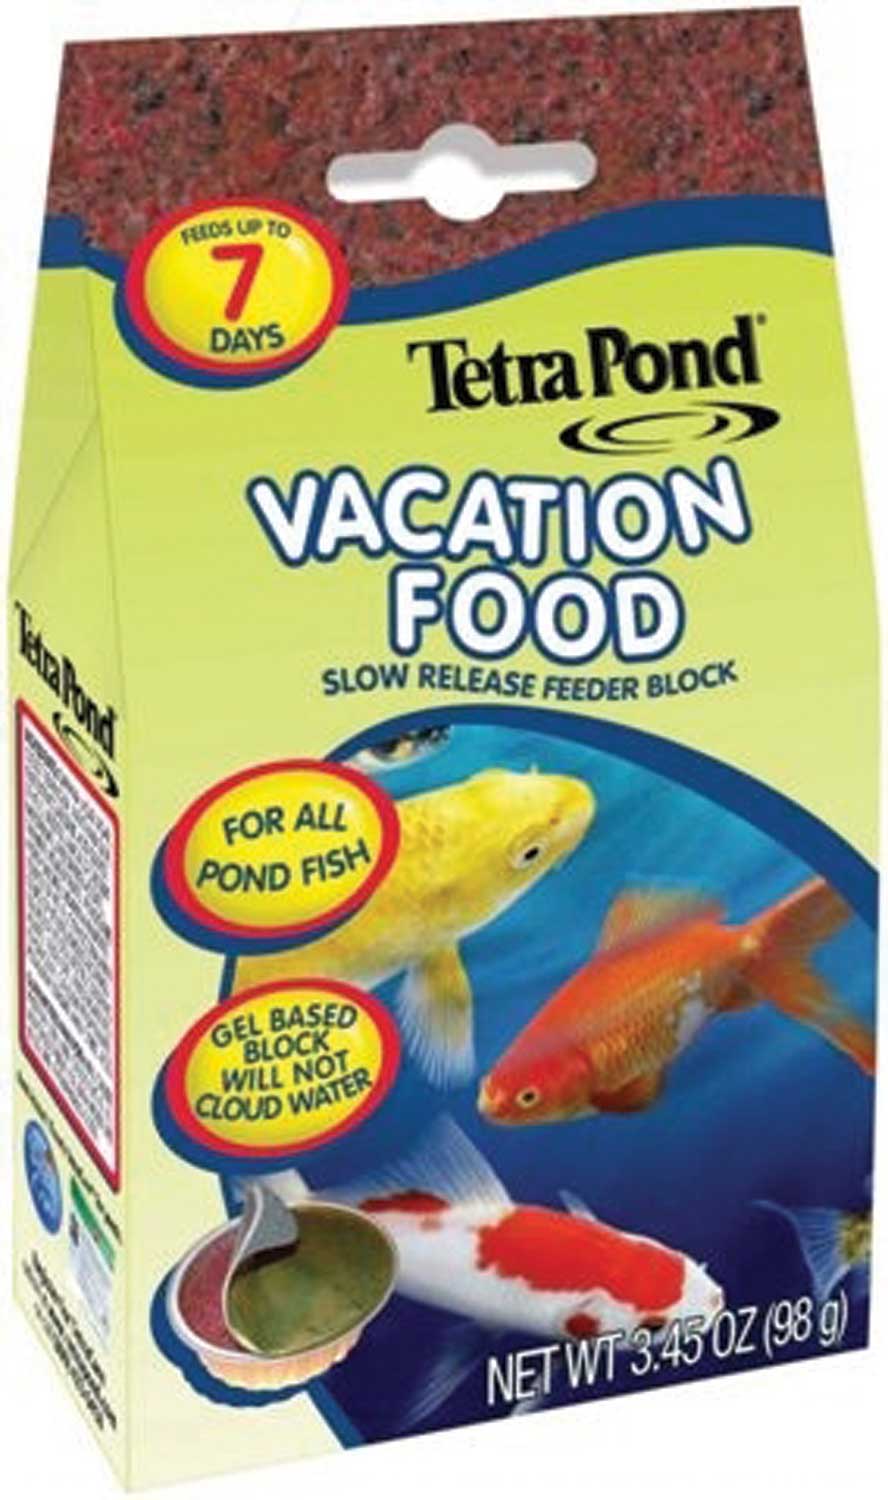 VACATION FISH FOOD